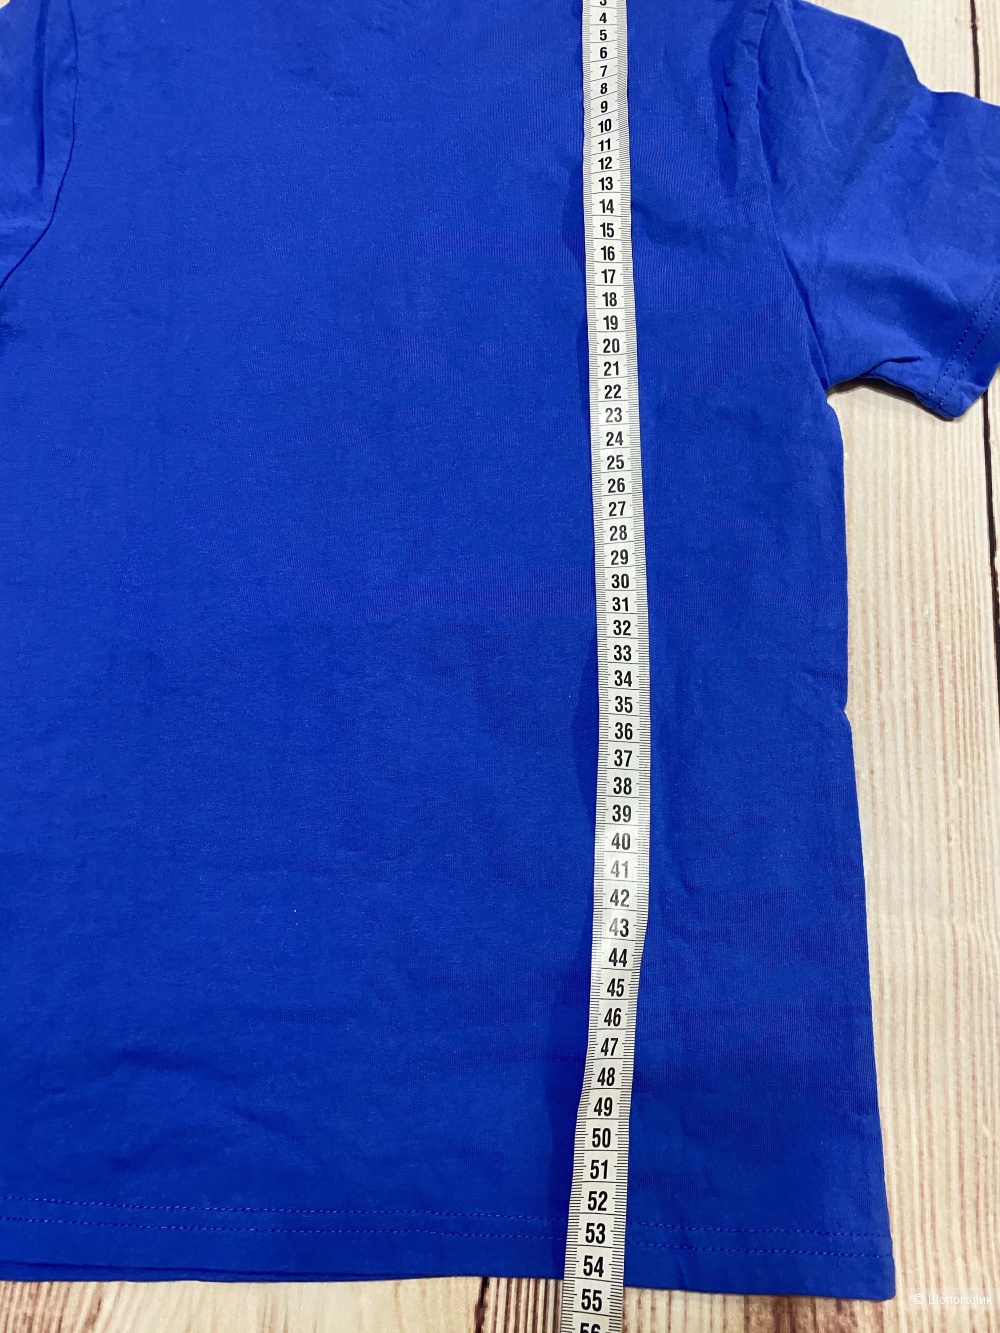 Детская футболка "Черепашки Ниндзя", размер на 120-128